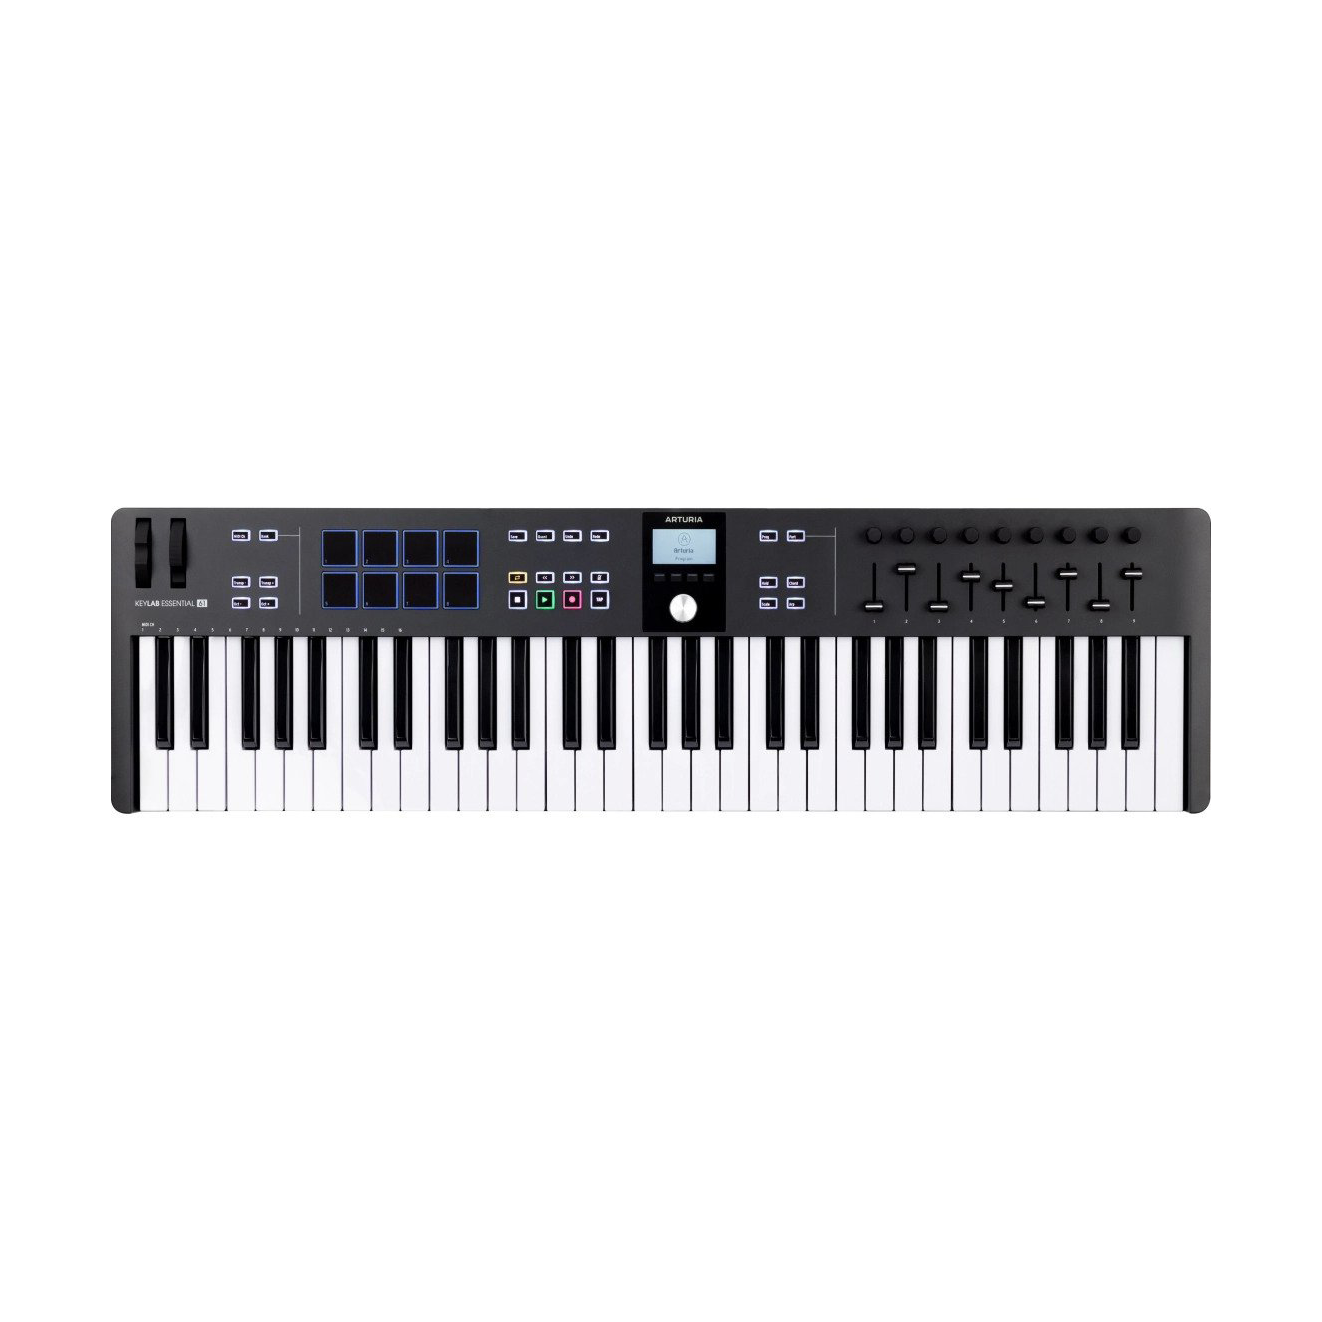 Arturia KeyLab Essential 61 MK3 Universal MIDI Controller Keyboard